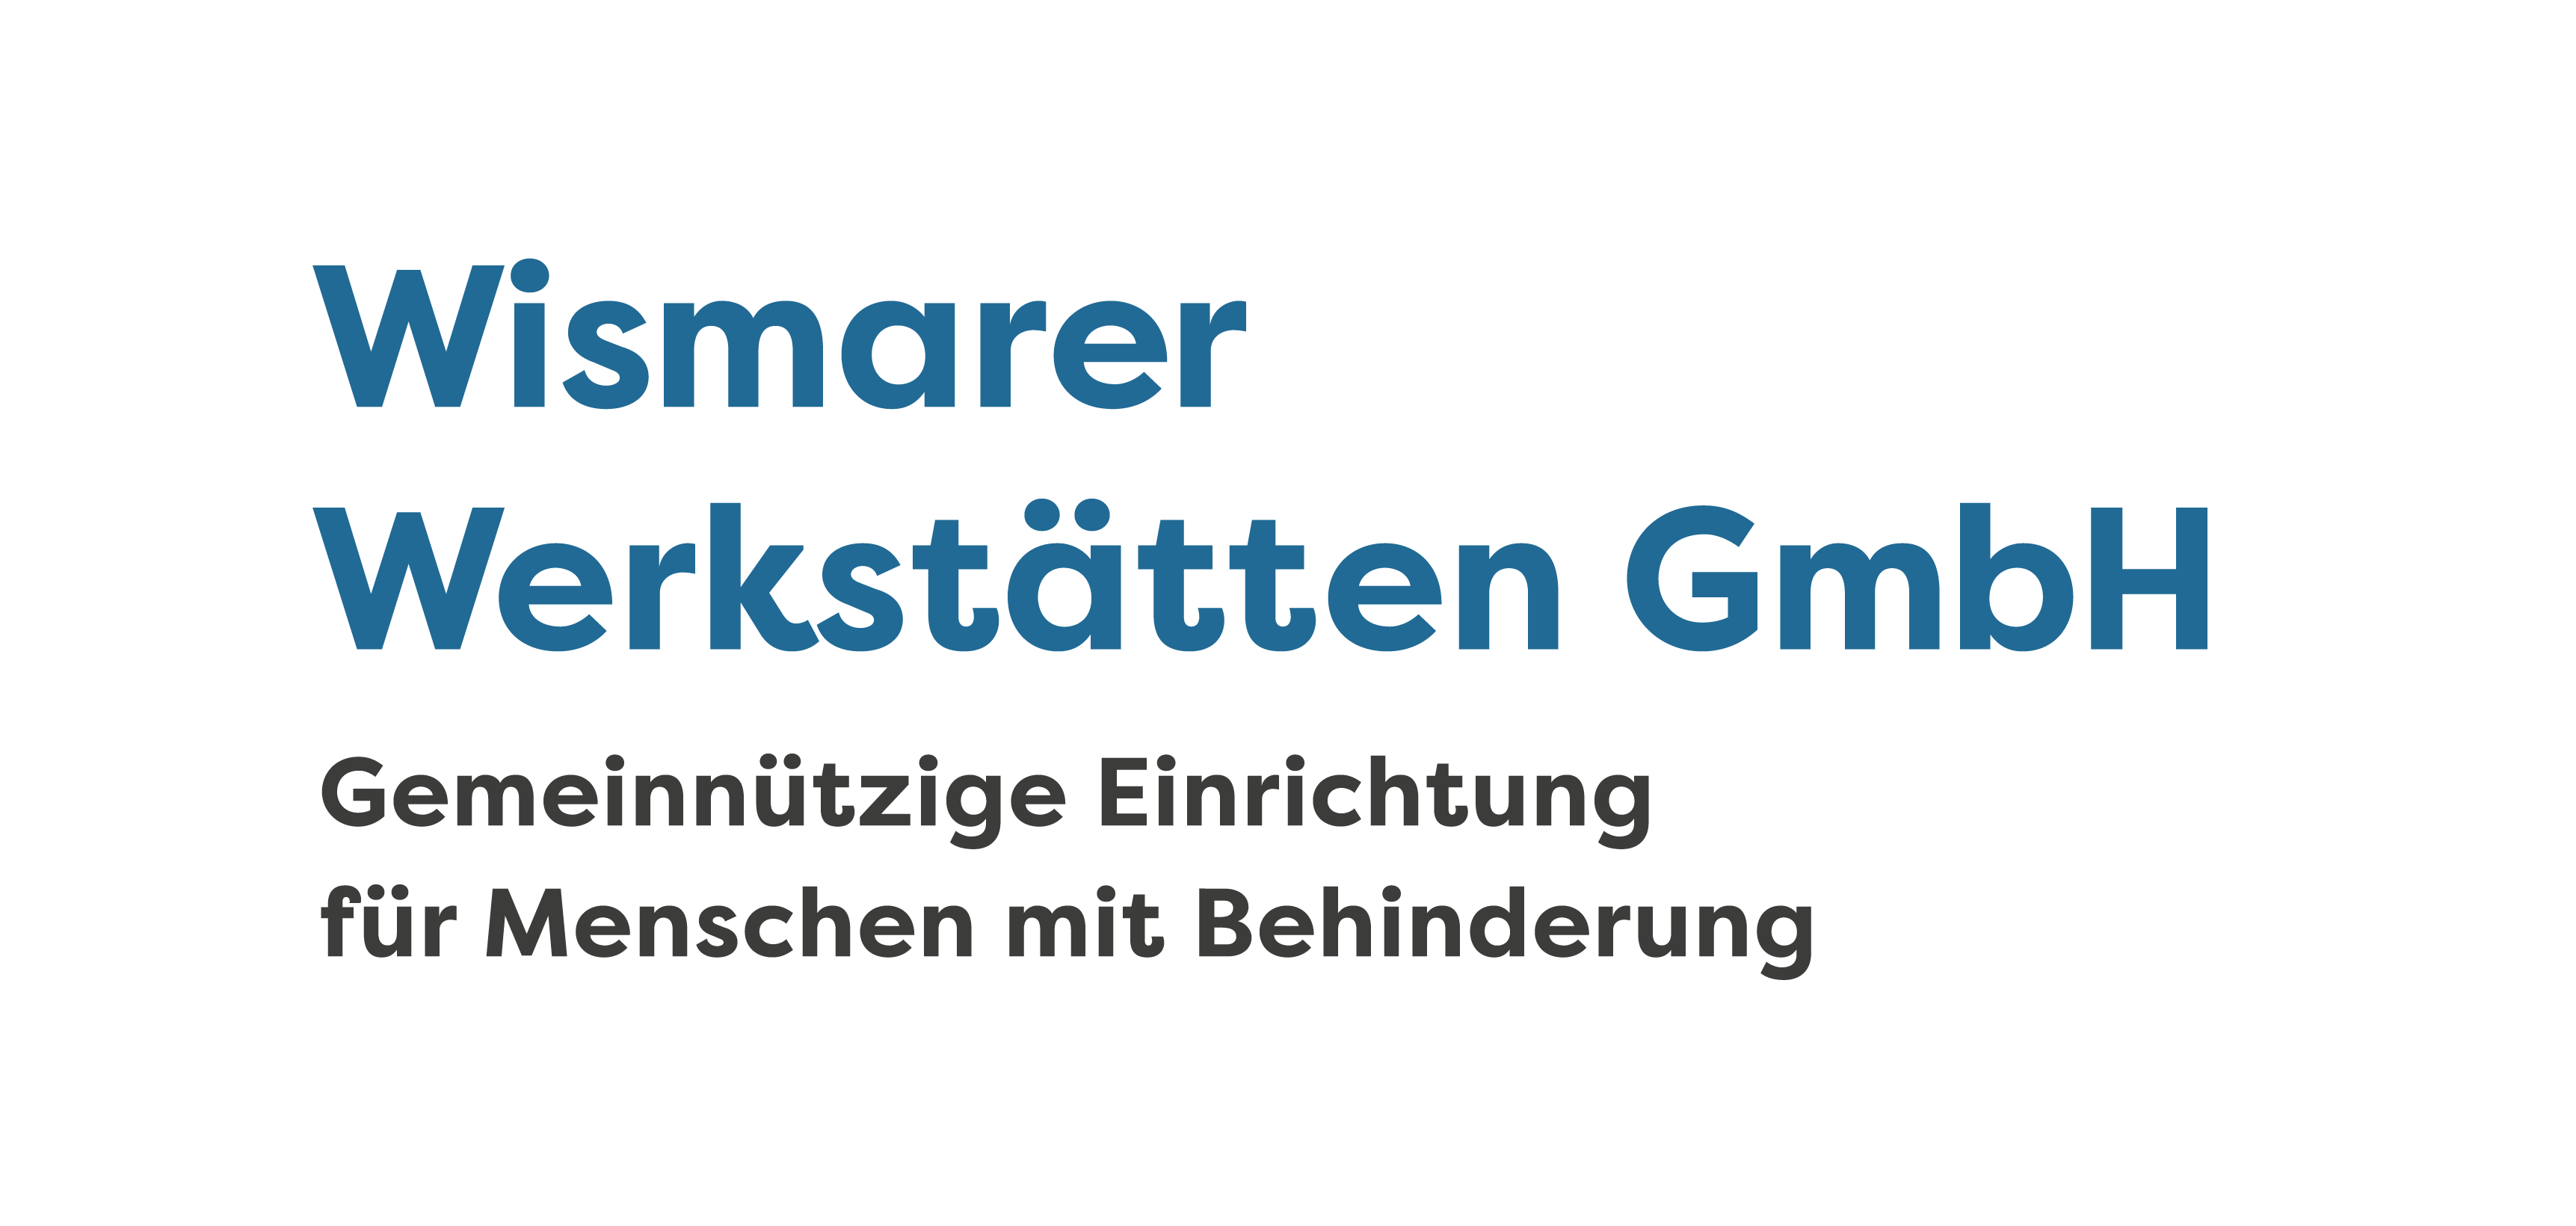 Das Logo der Wismarer Werkstätten zeigt den Schriftzug sowie die Unterzeile: Gemeinnützige Einrichtung für Menschen mit Behinderung